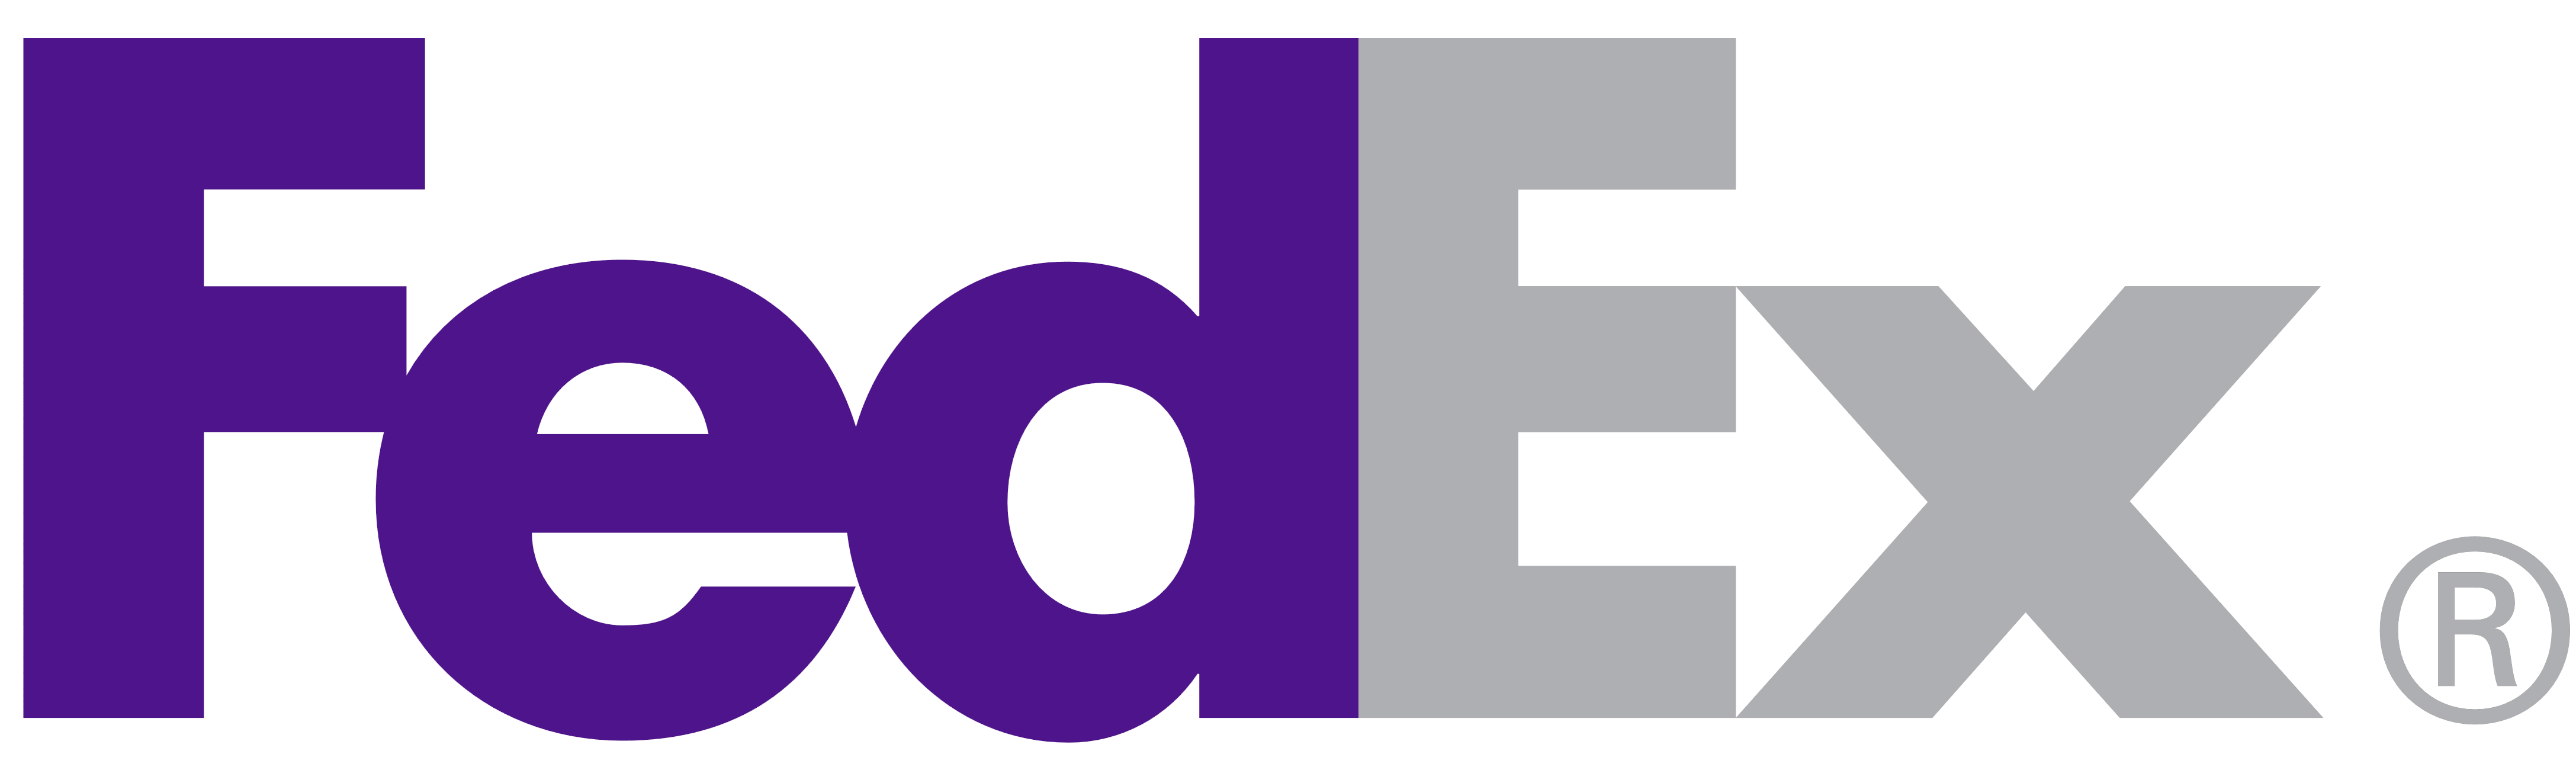 New FedEx Logo - FedEx